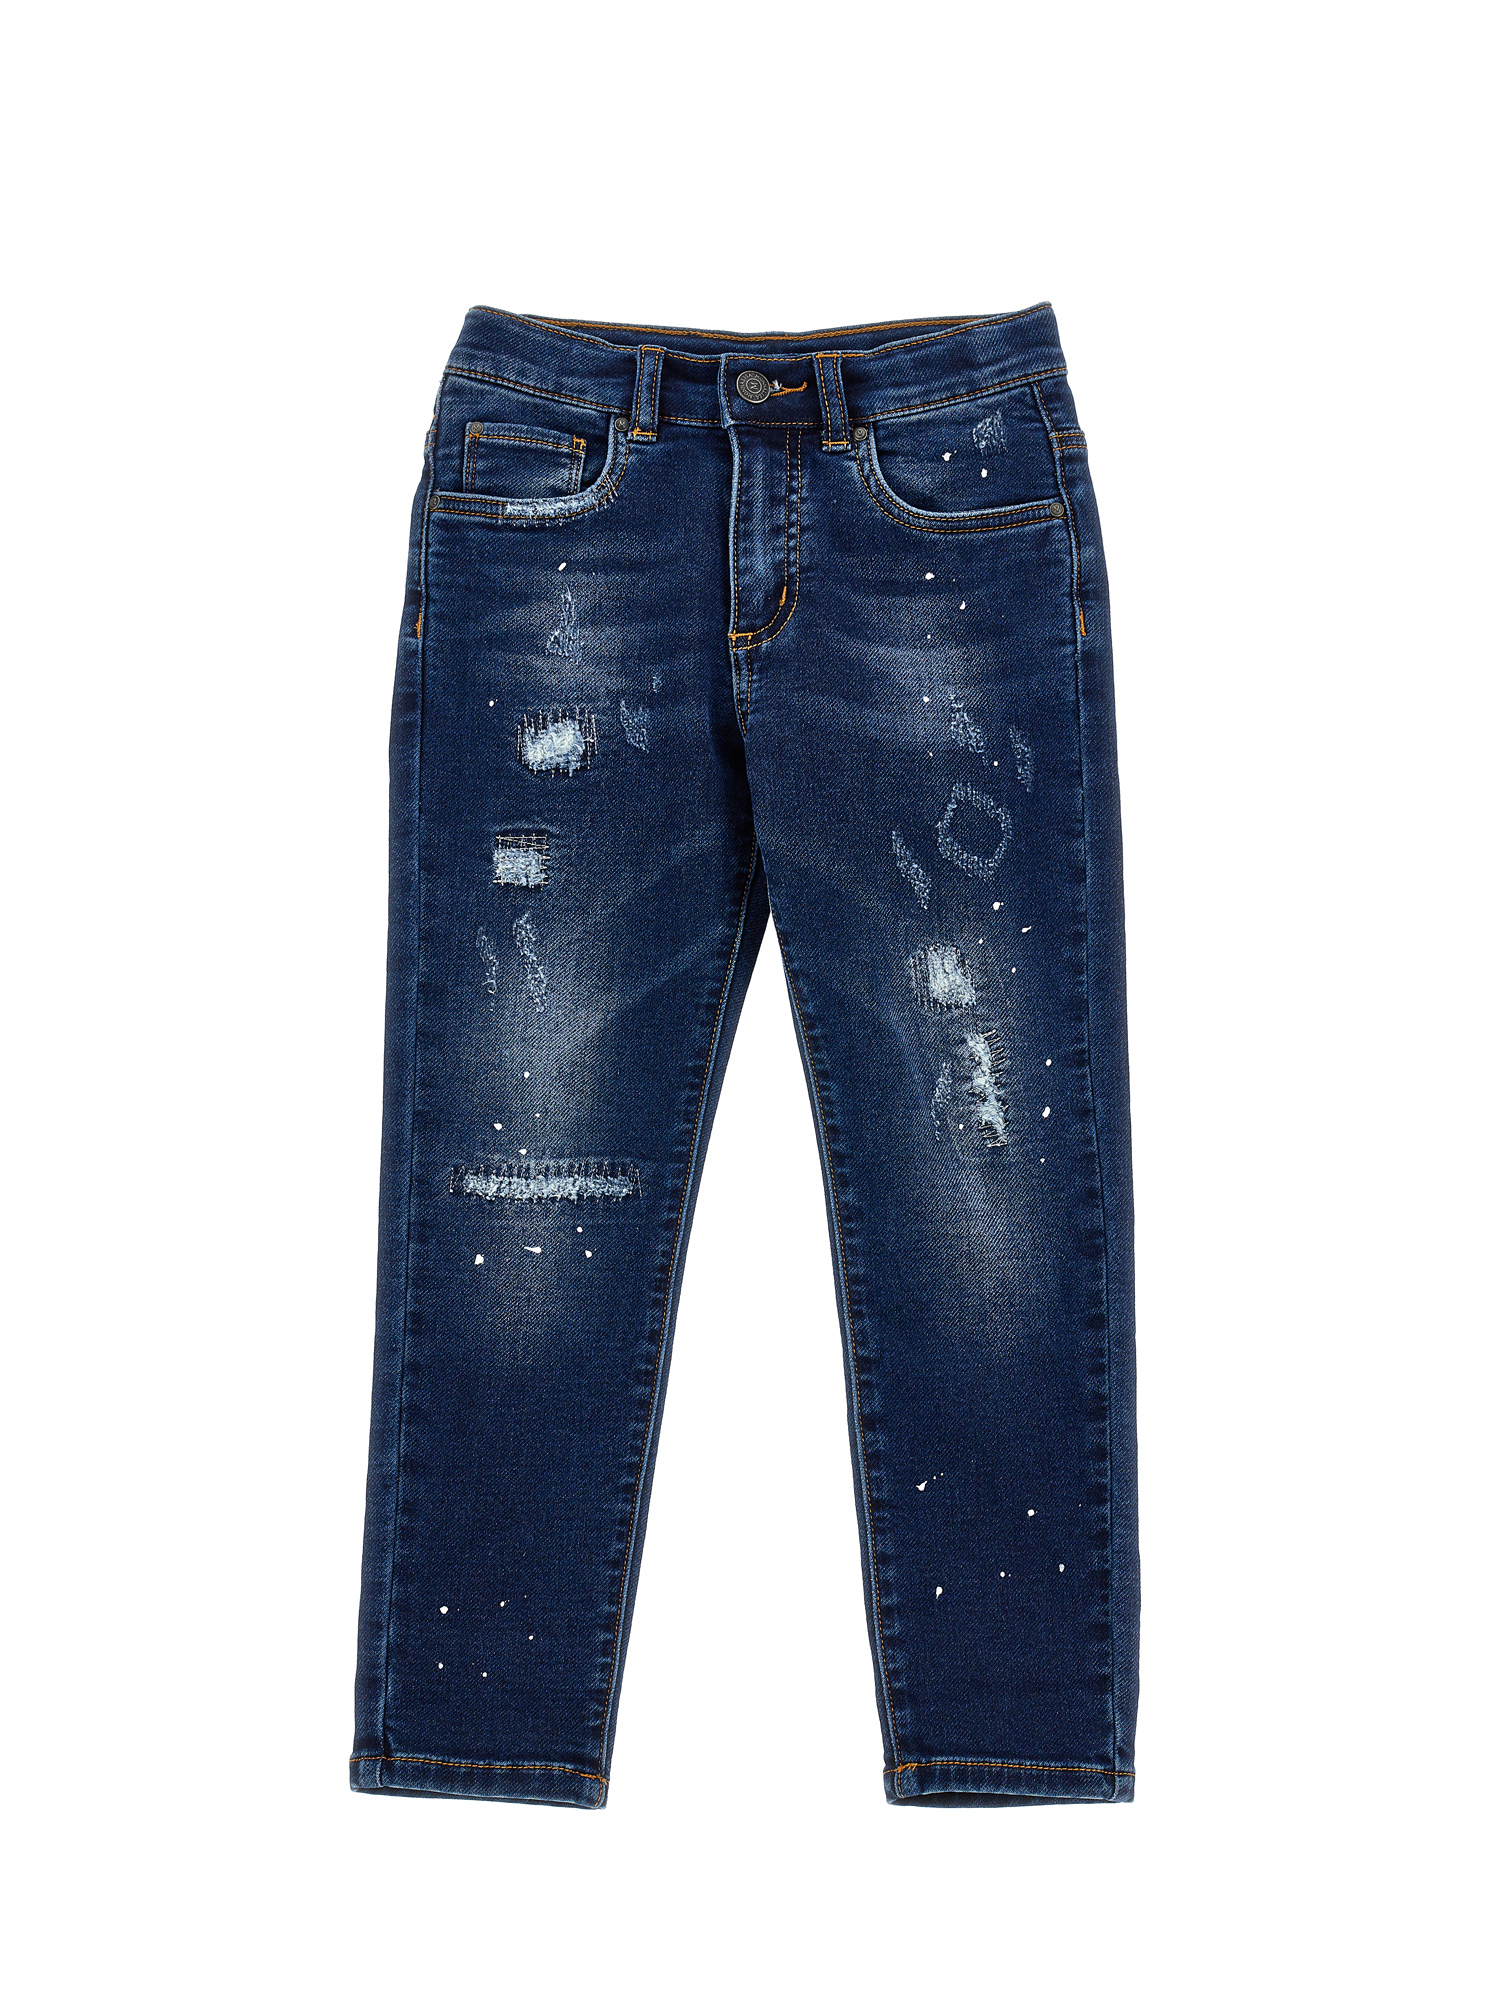 Vintage-effect denim jeans